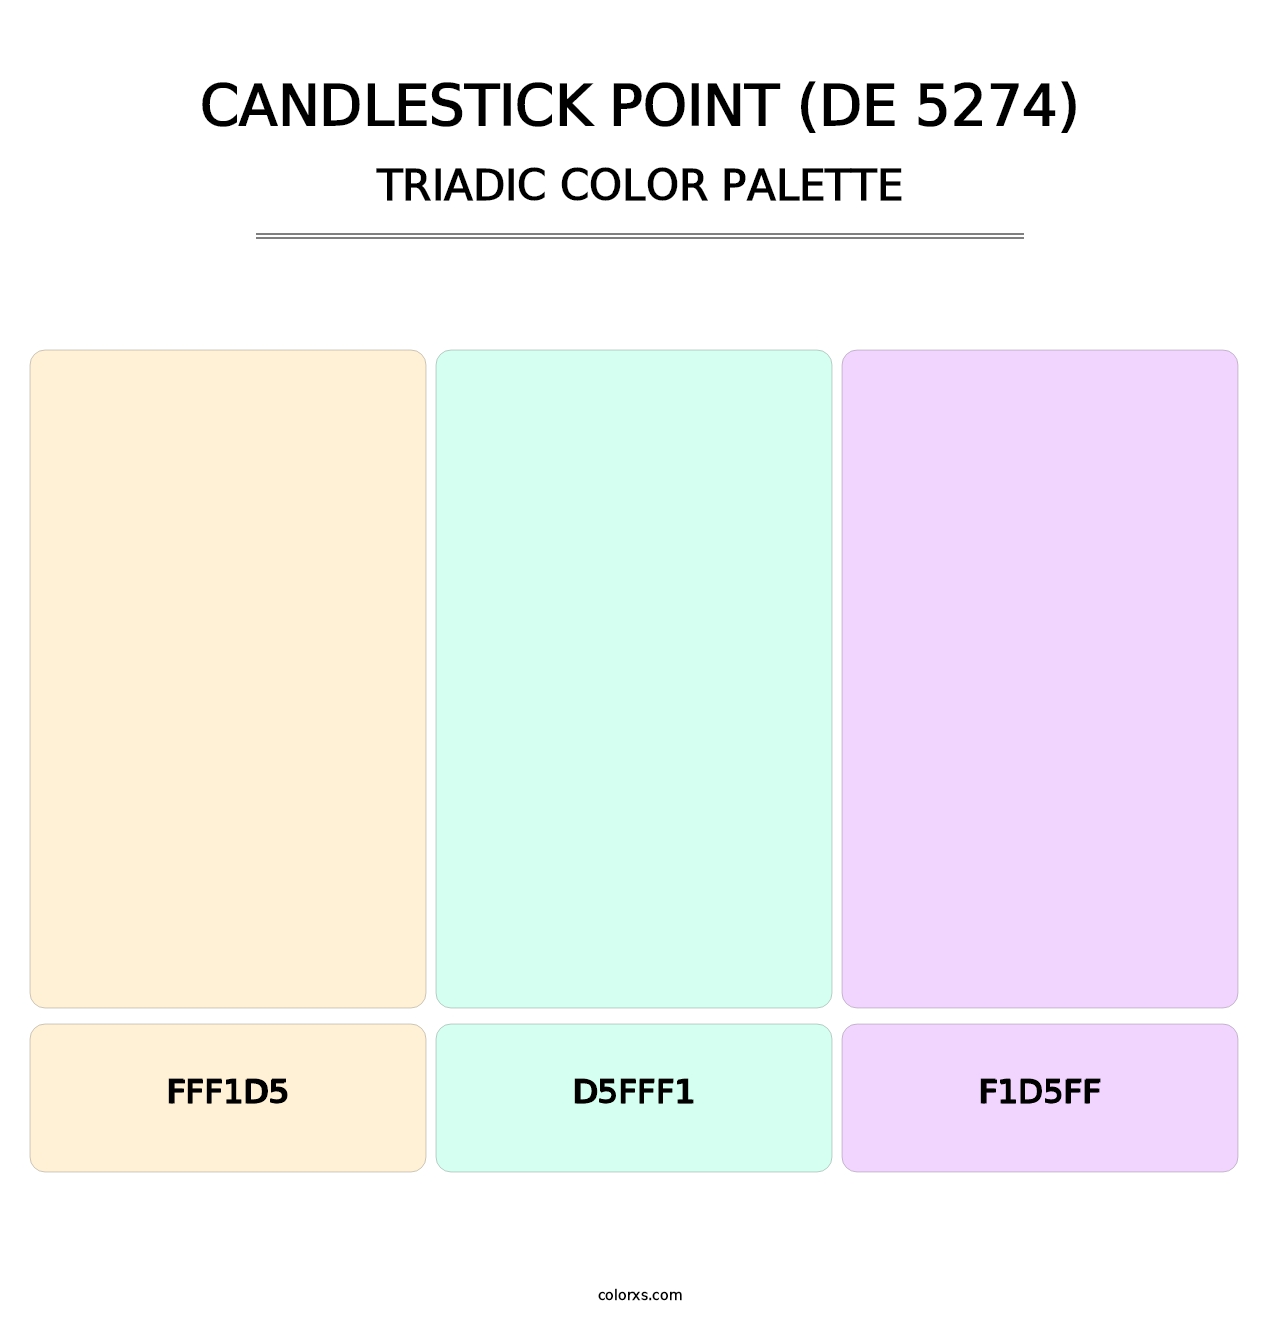 Candlestick Point (DE 5274) - Triadic Color Palette